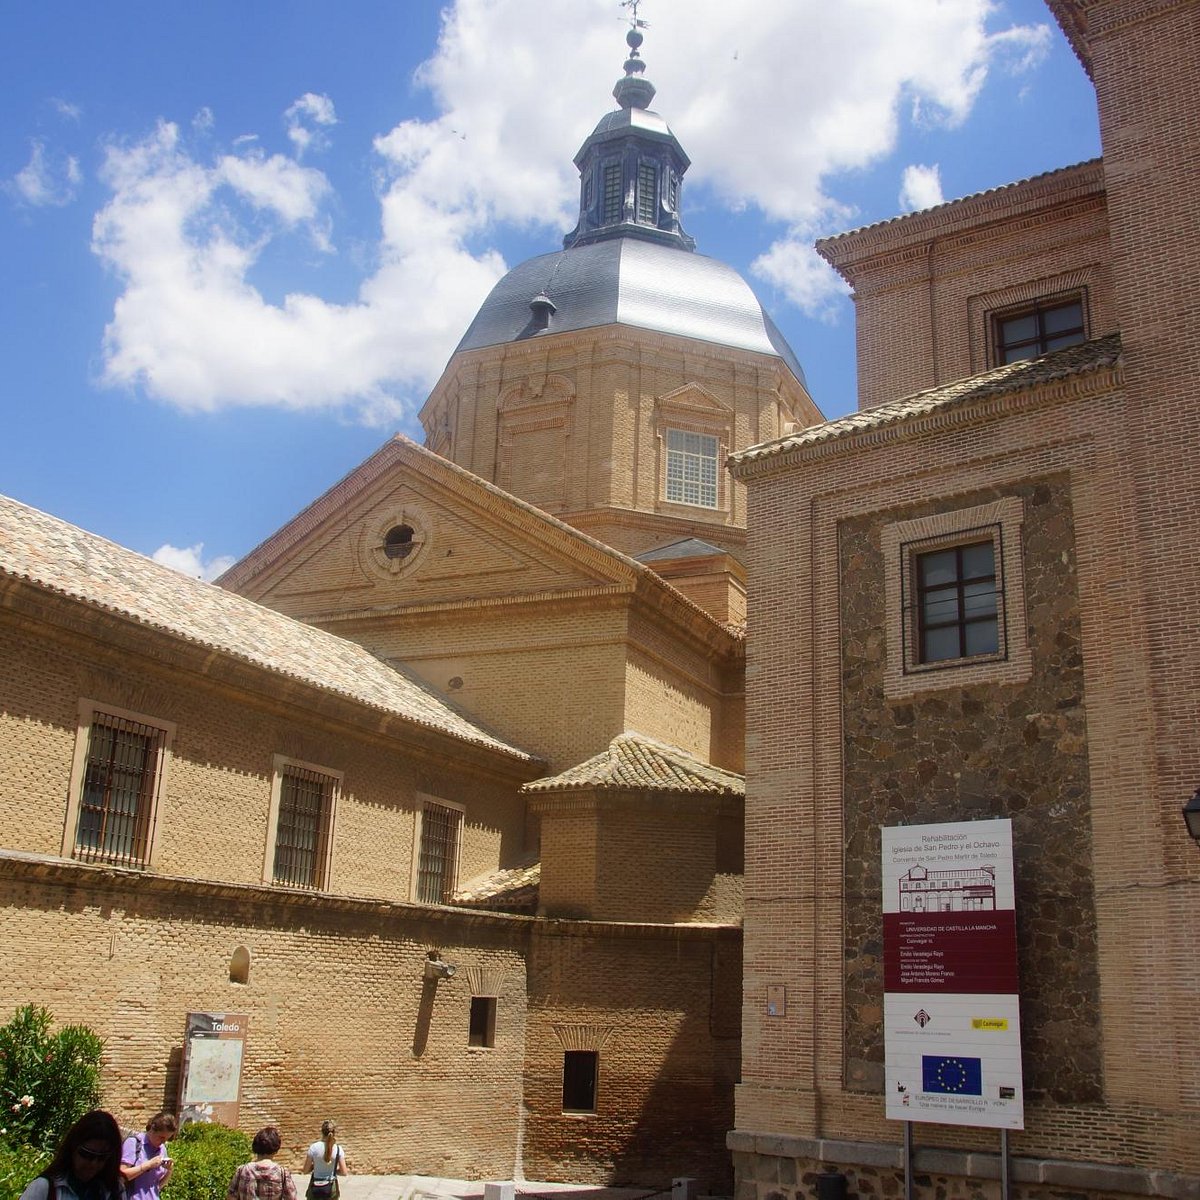 Convento e iglesia de San Pedro Martir, Toledo